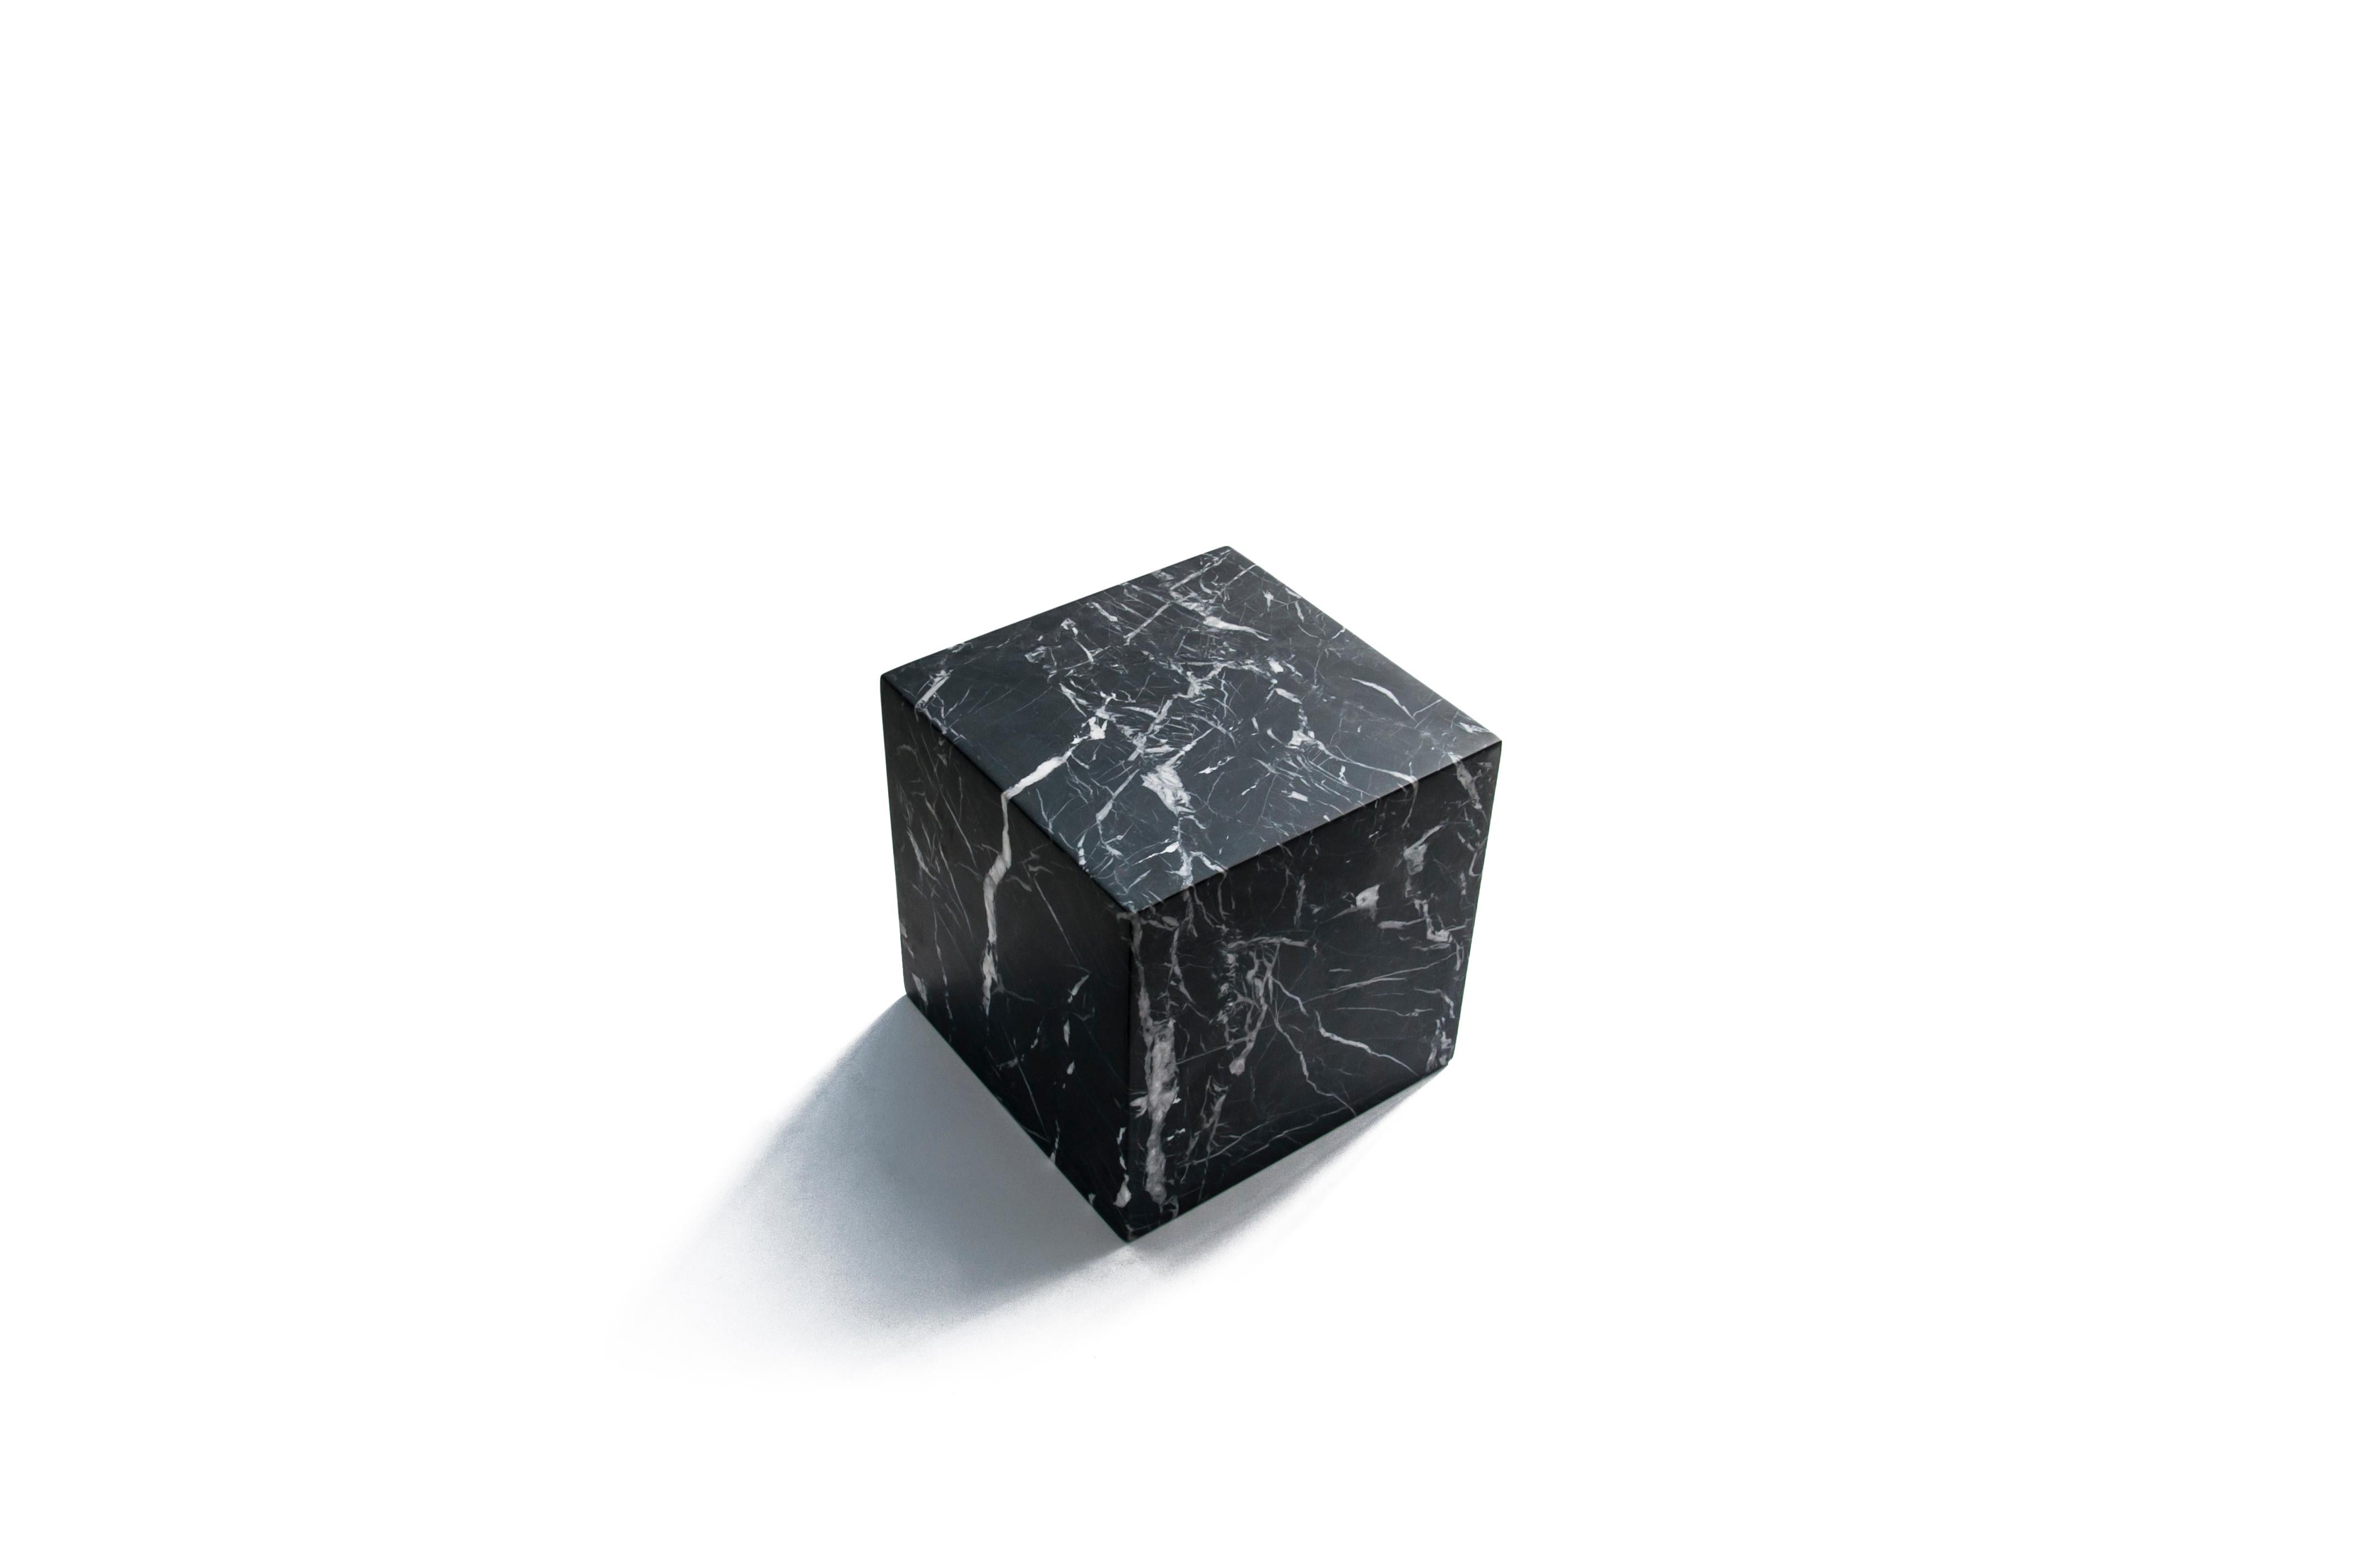 Grand cube décoratif presse-papiers plein en marbre noir Marquina. Chaque pièce est en quelque sorte unique (chaque bloc de marbre est différent par ses veines et ses nuances) et fabriquée à la main par des artisans italiens spécialisés depuis des